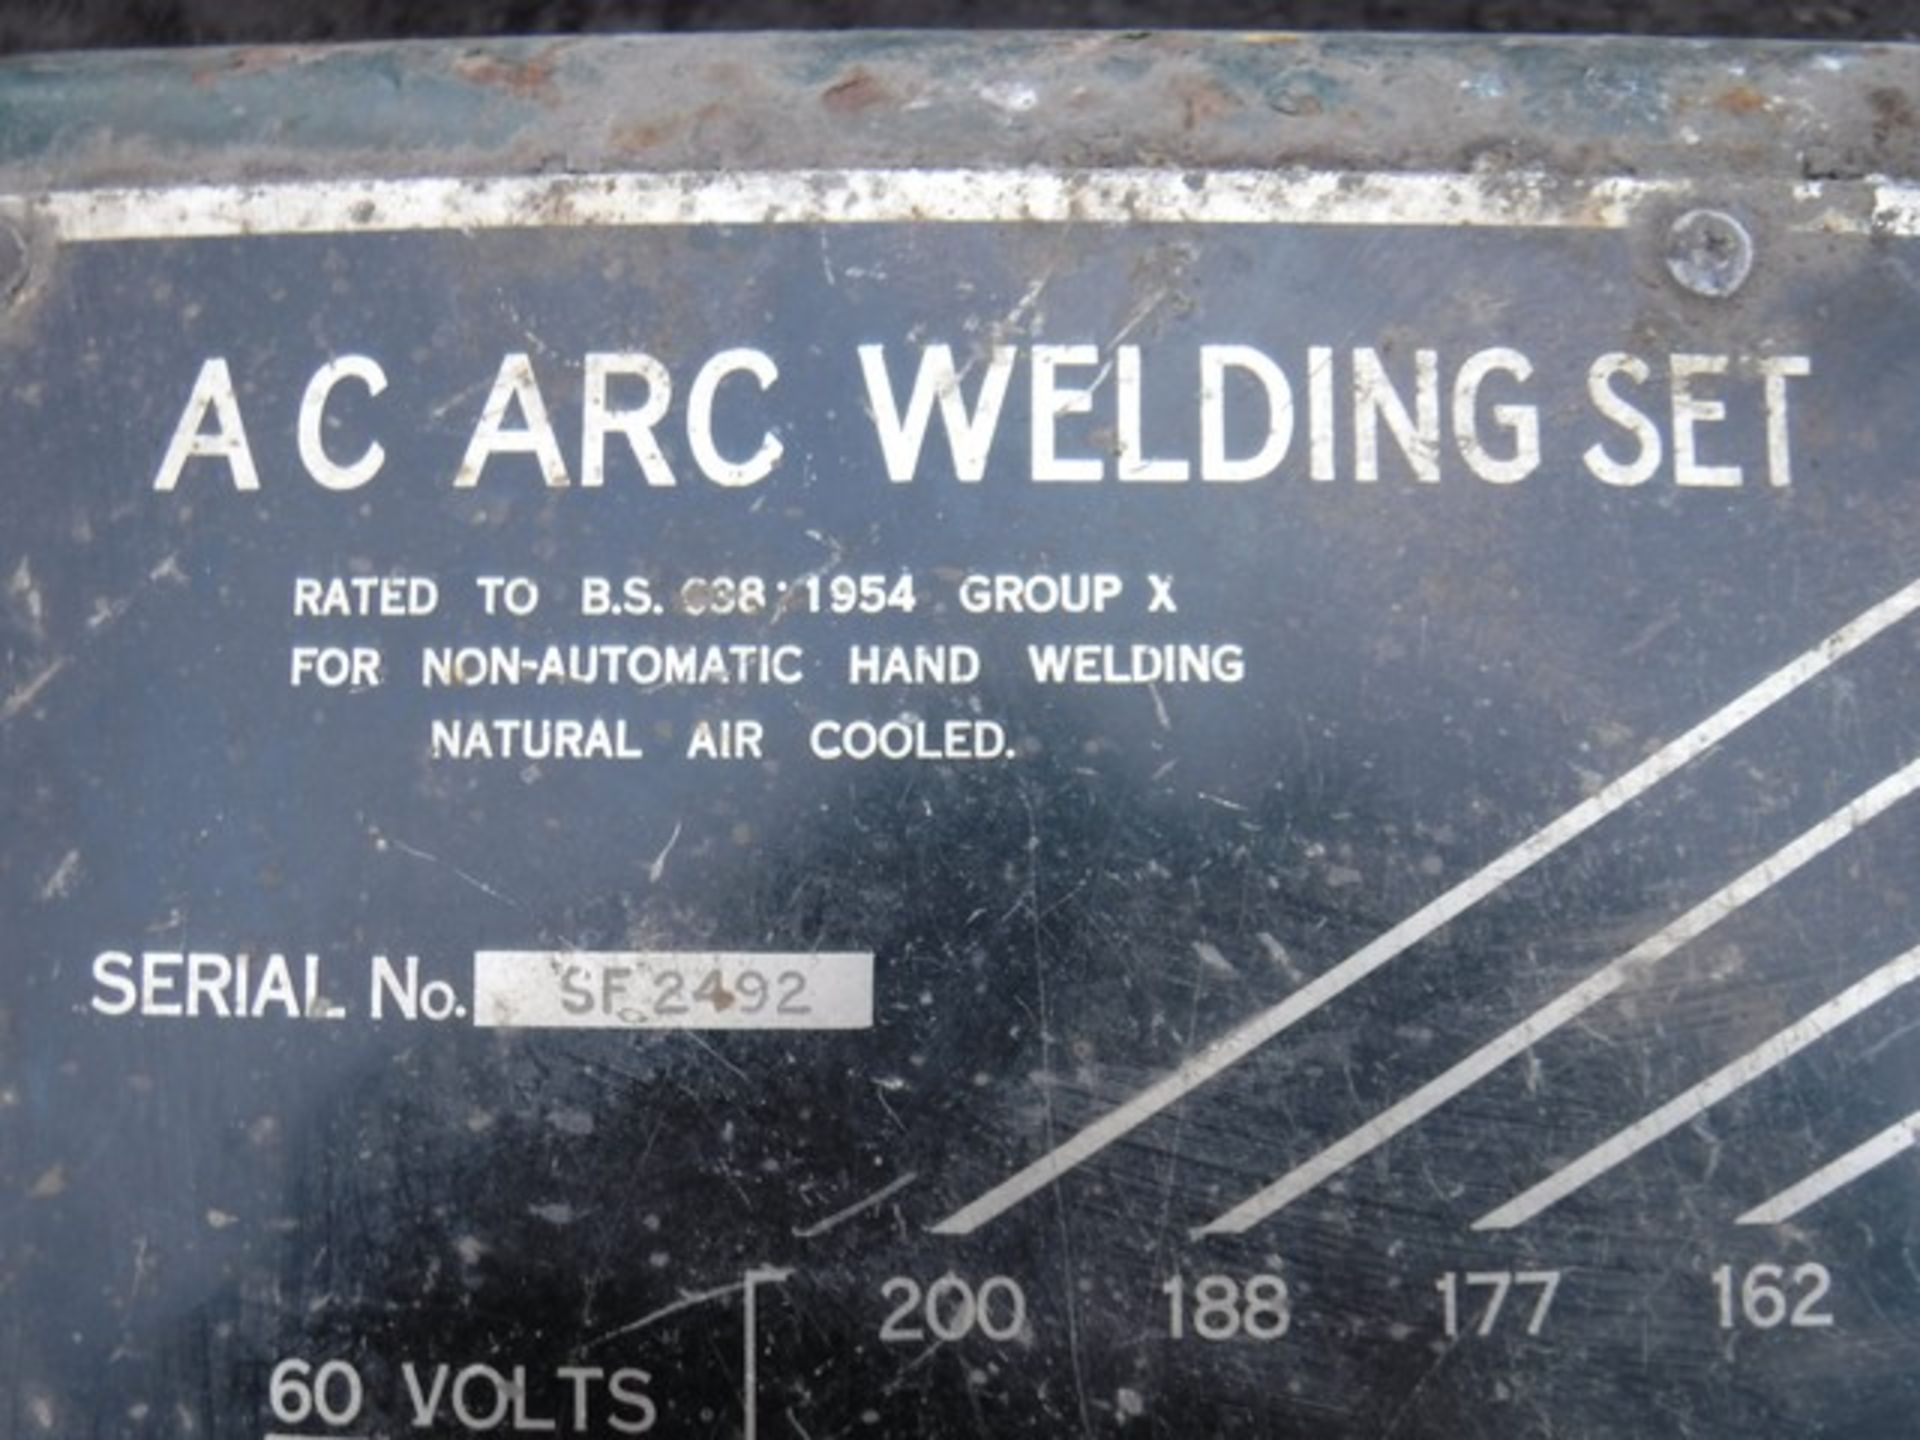 ACP 200 arc welder S/N - SF2492 - Image 2 of 2